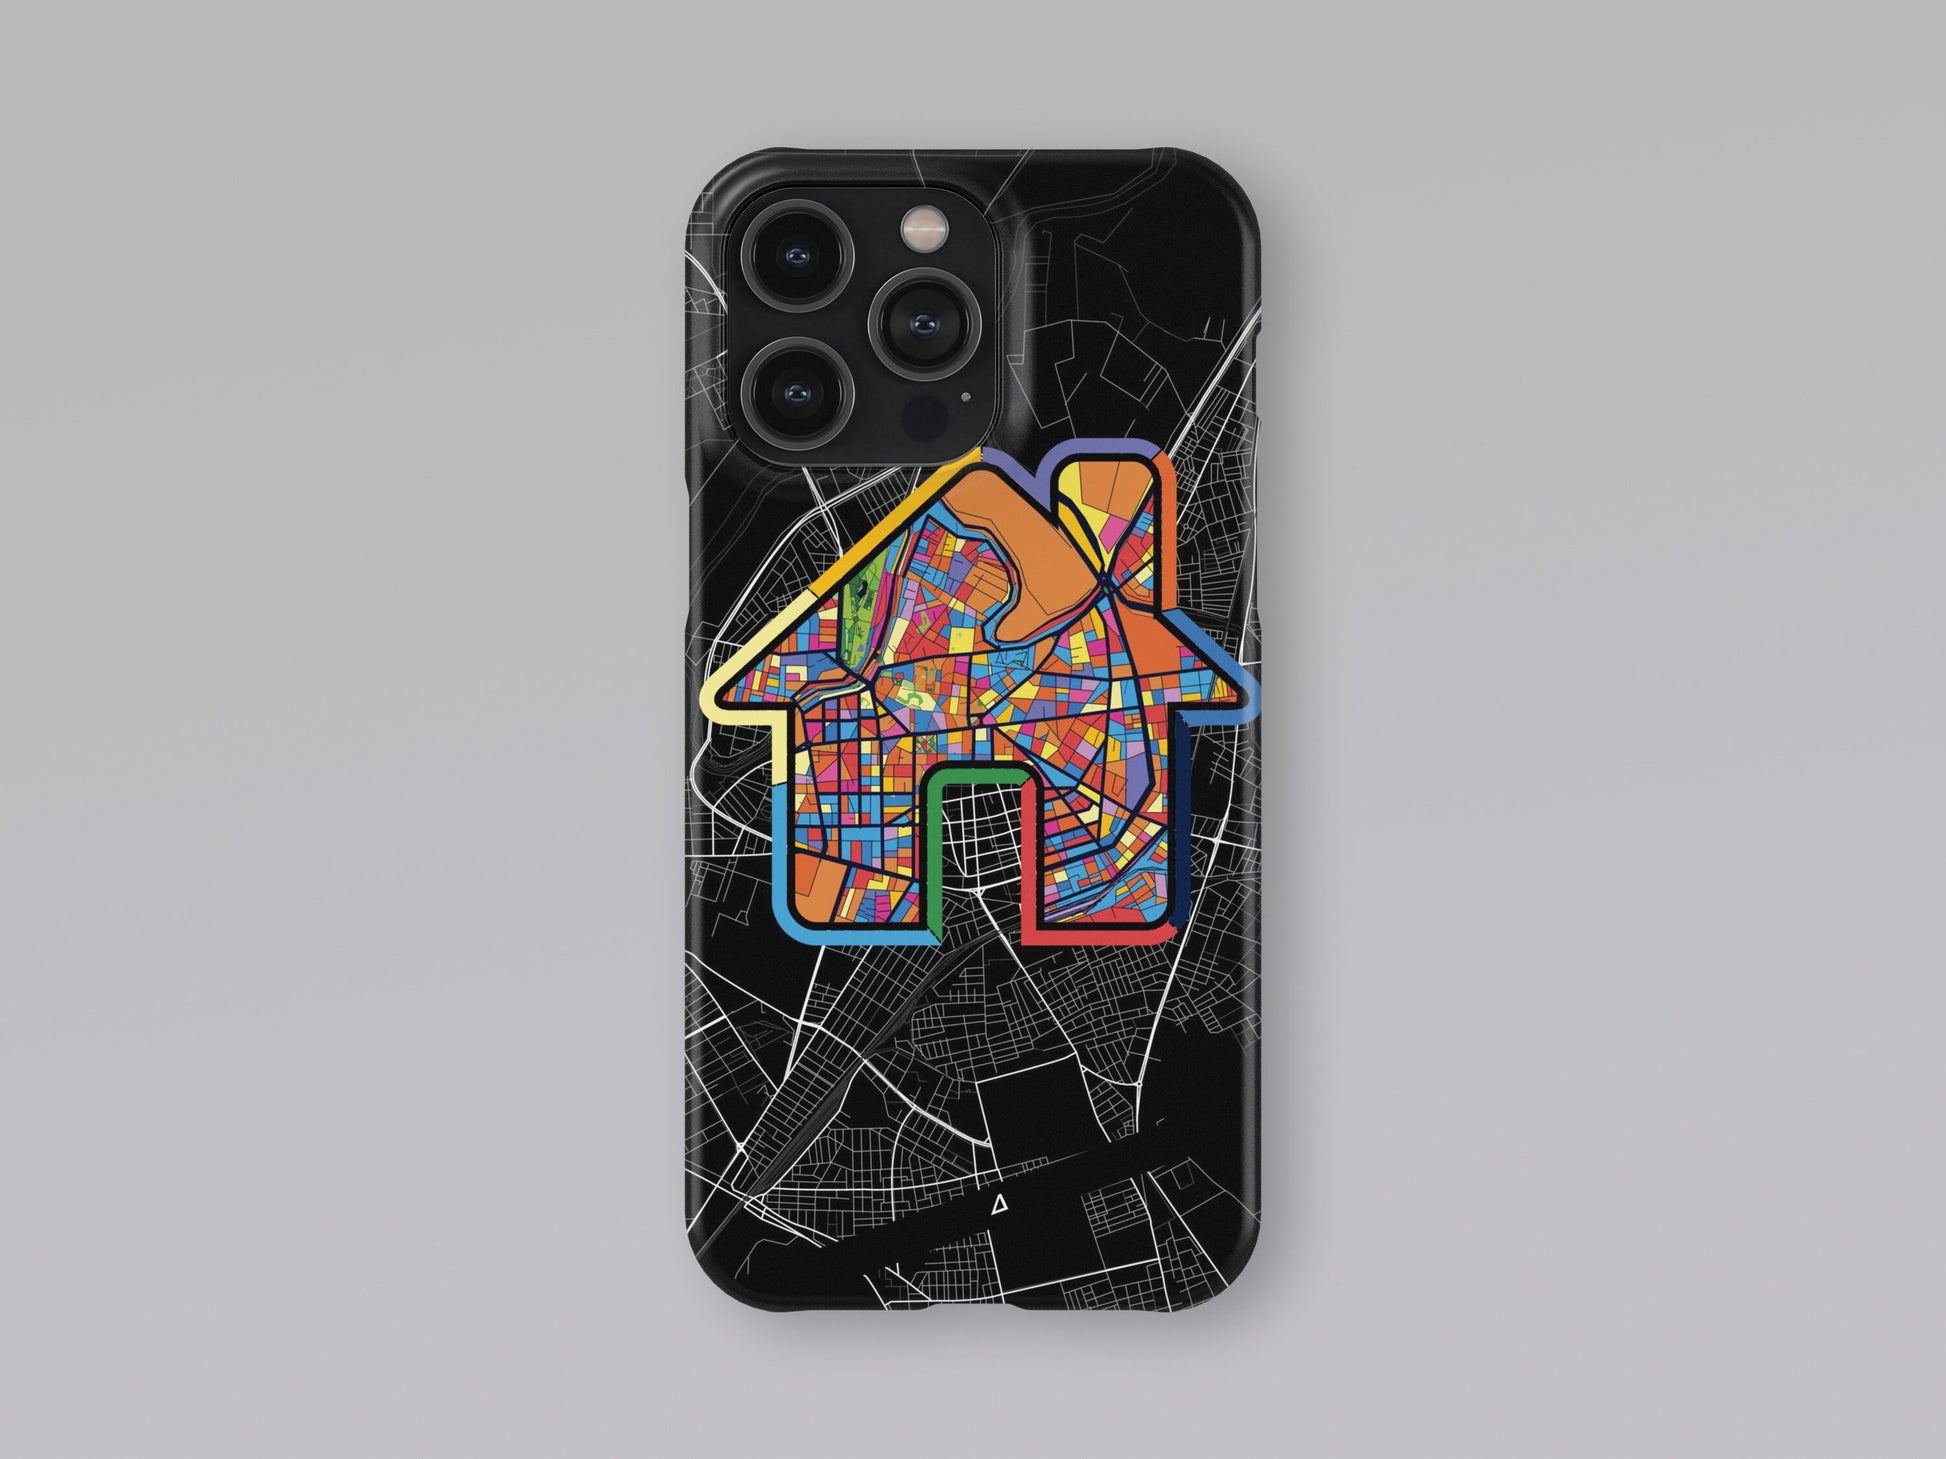 Λαρισα Ελλαδα slim phone case with colorful icon 3